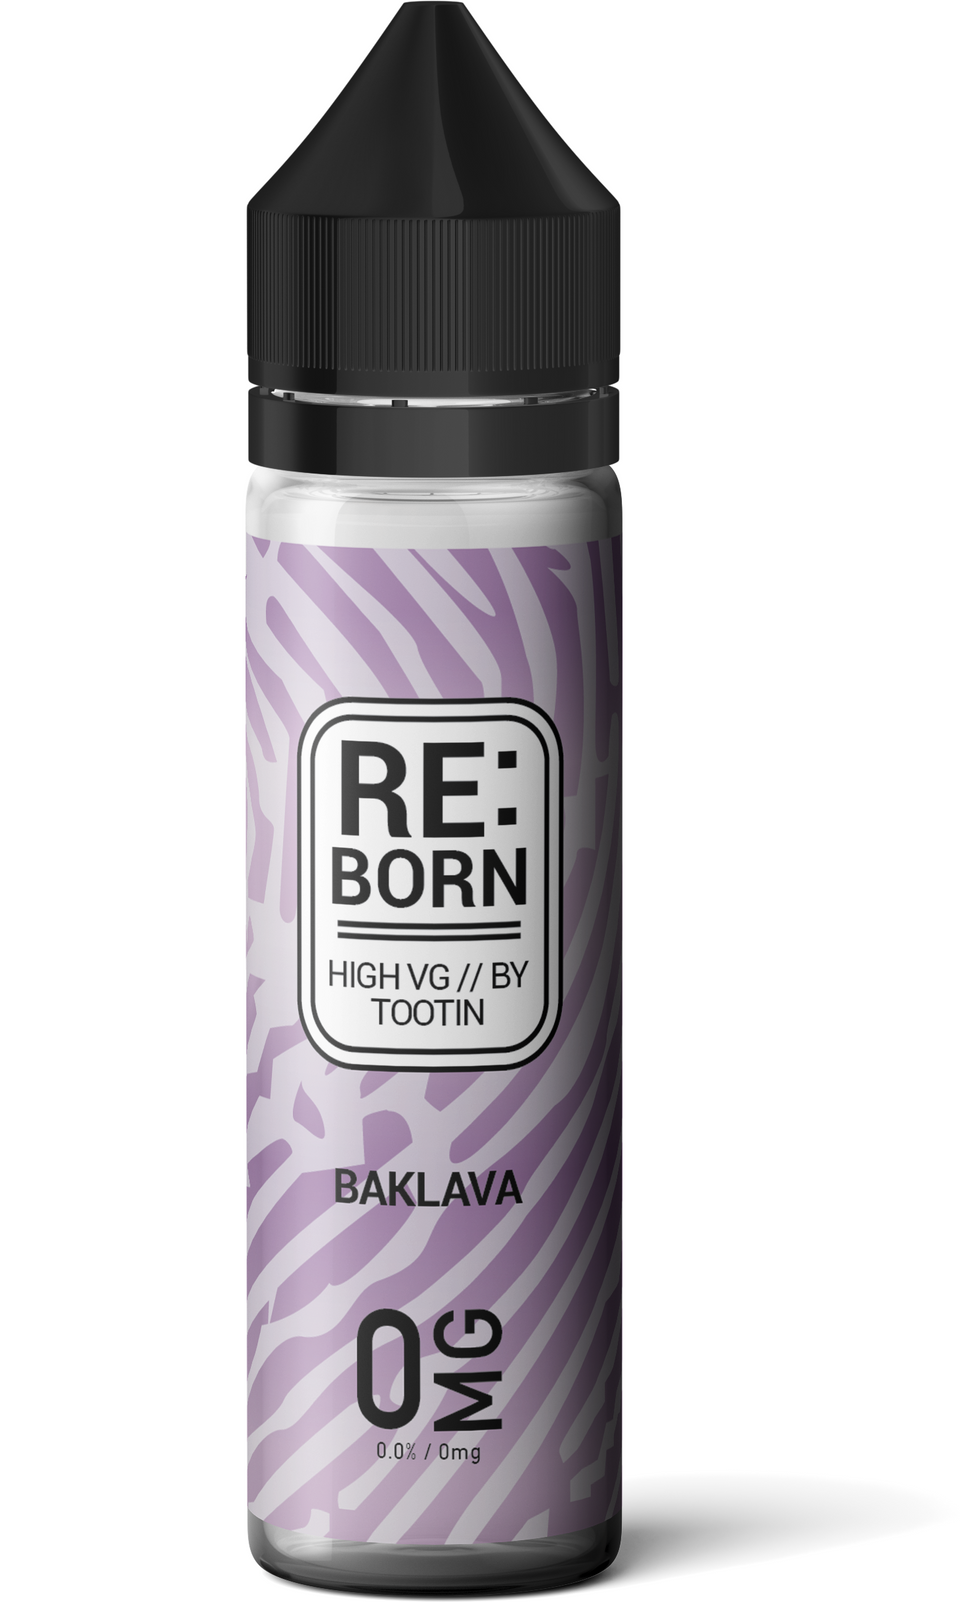 RE:Born - Baklava - 0mg - 50ml shortfill - ASPIRE UK